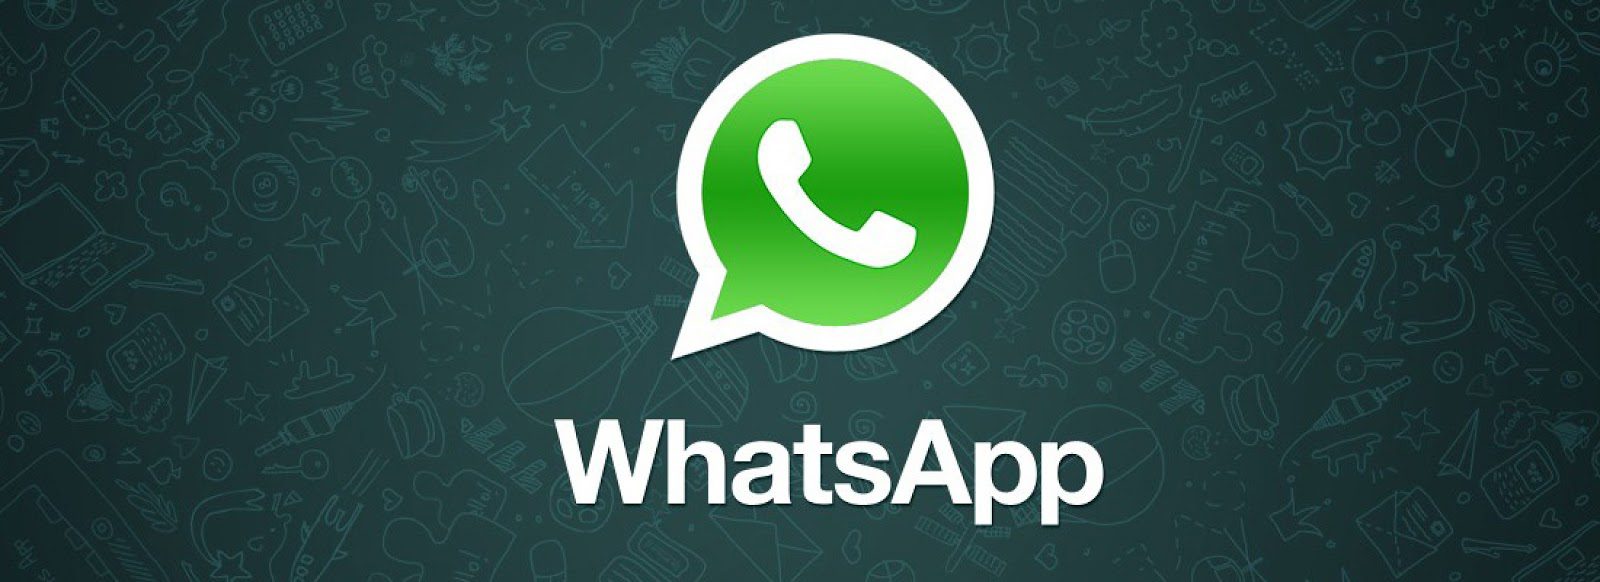 Whatsapp ya tiene mas de 400 millones de usuarios activos